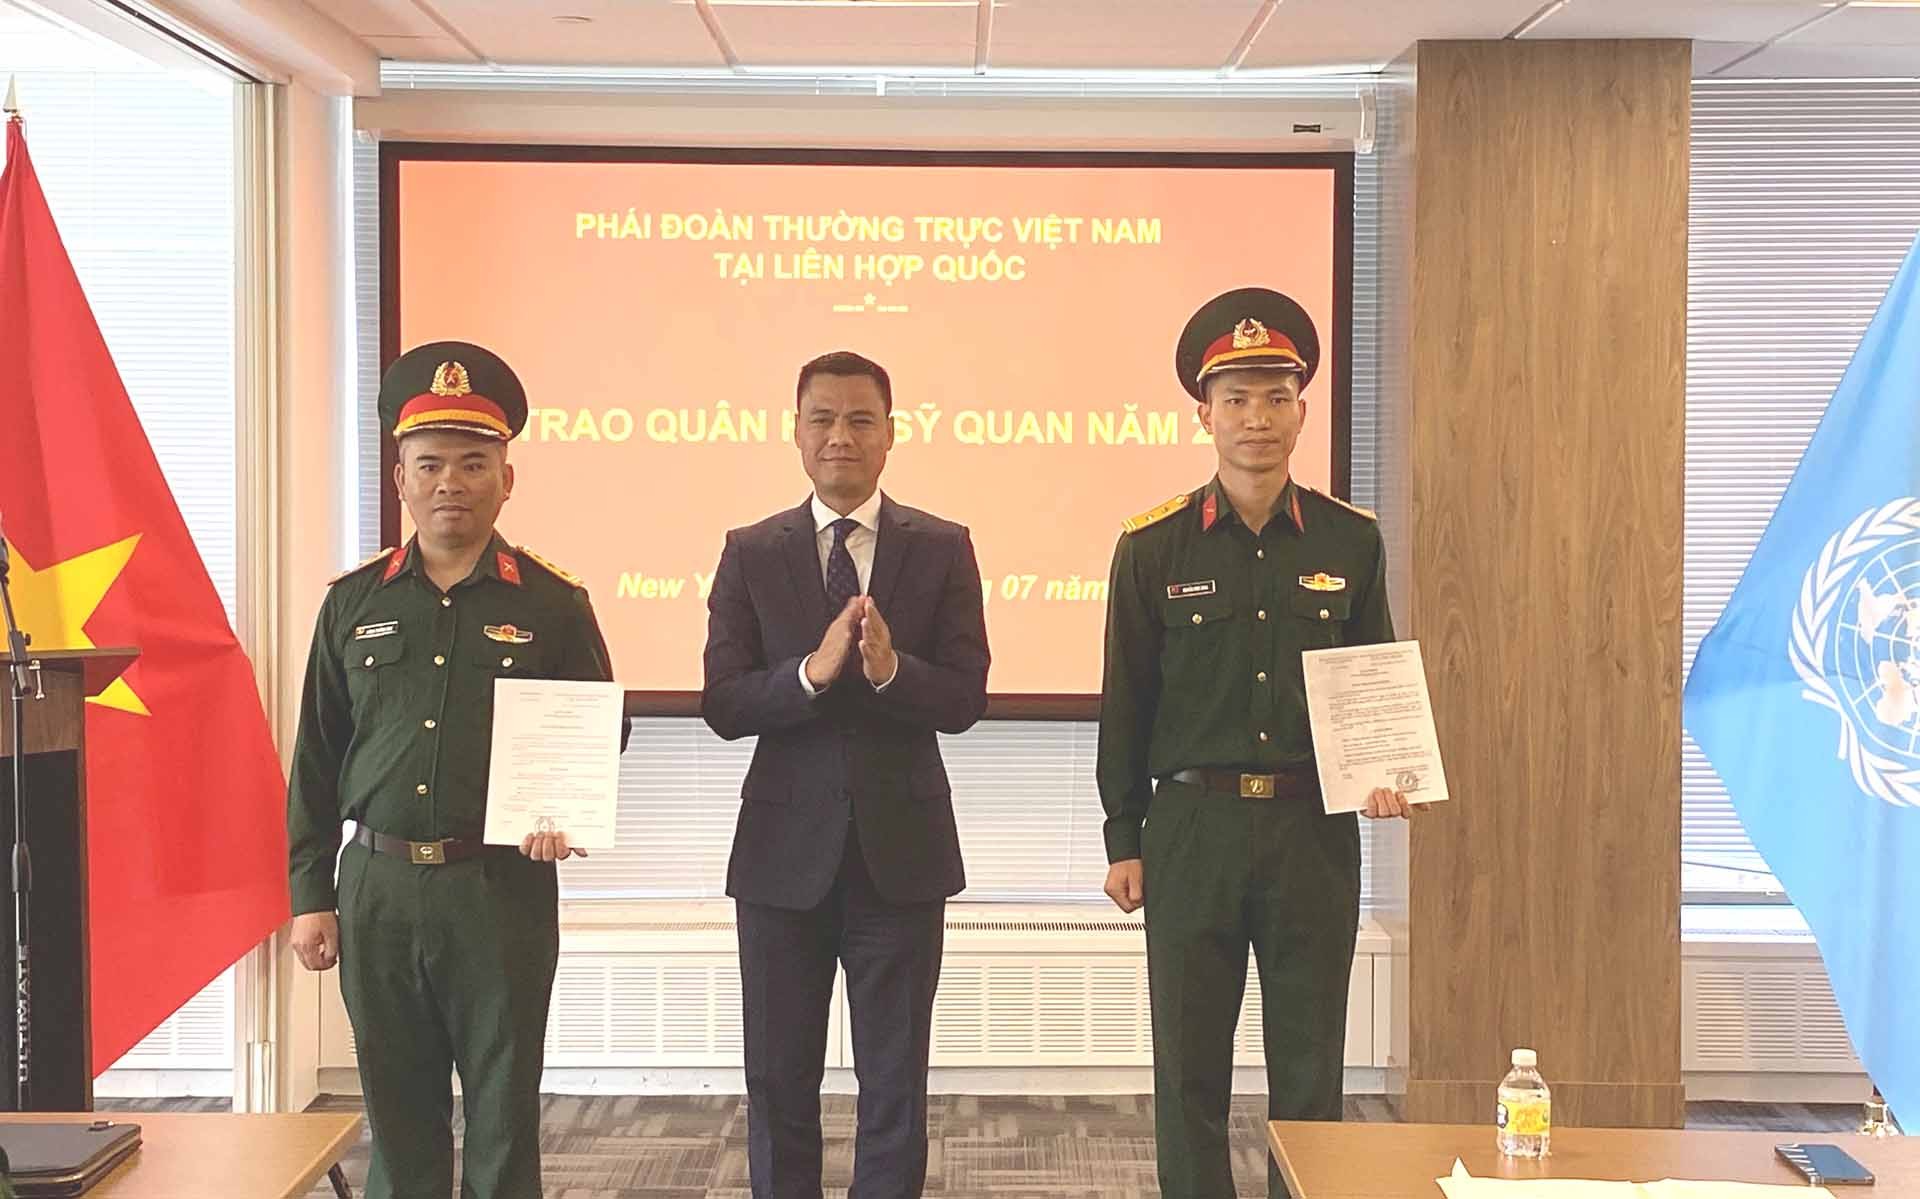 Đại sứ Đặng Hoàng Giang và ccs đồng chí được trao quân hàm.